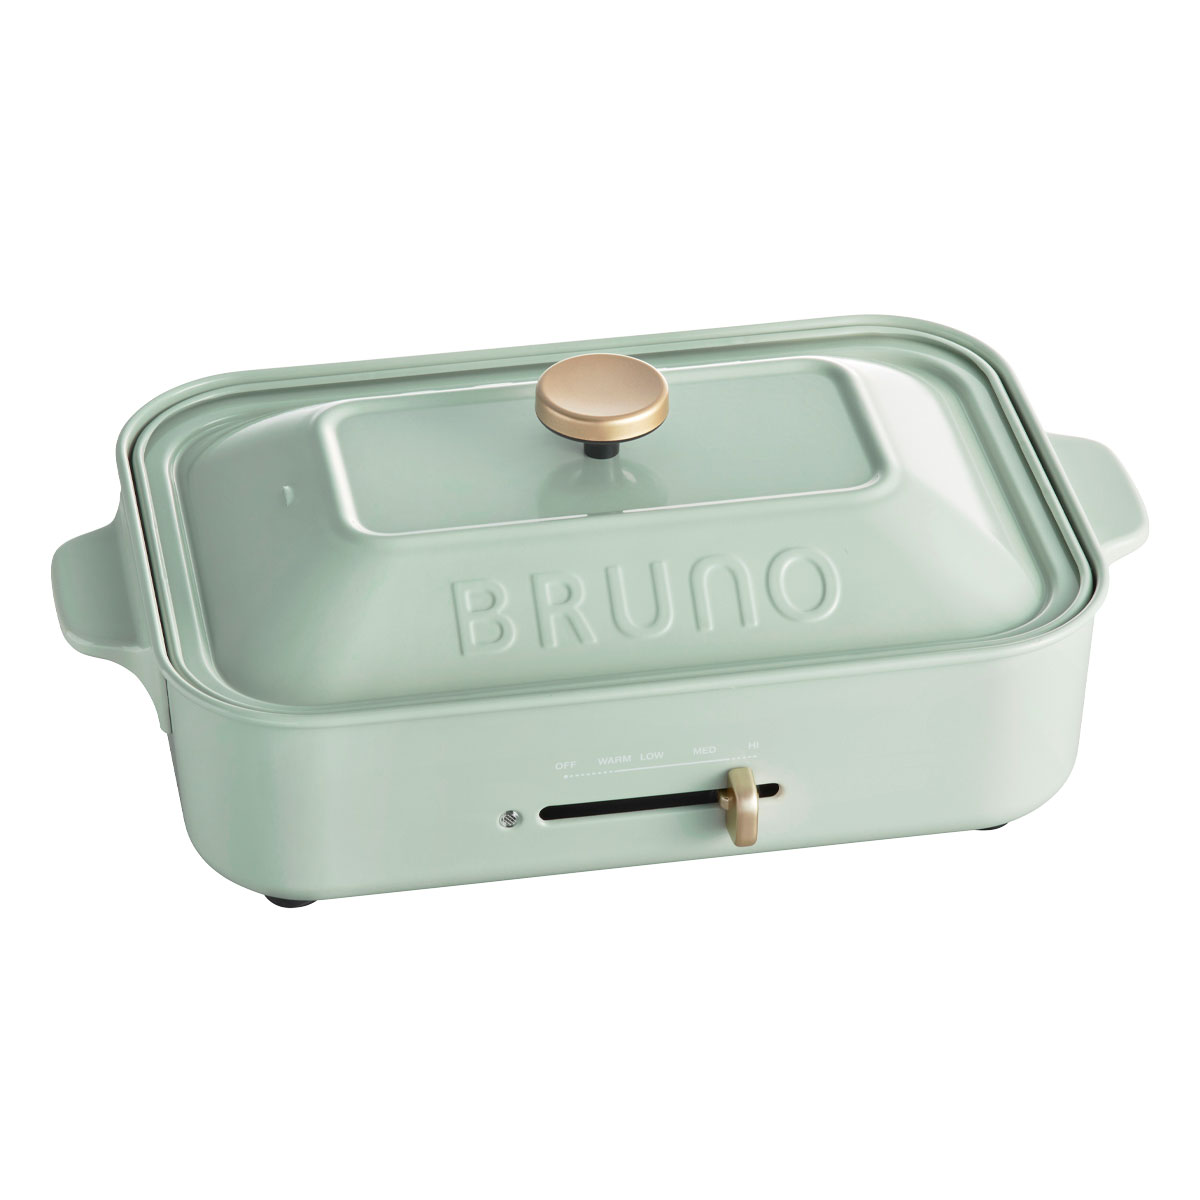 ブルーノ ホットプレート BOE021 BRUNO コンパクトホットプレート キッチン家電 電気プレート 焼肉 たこ焼き 1年保証